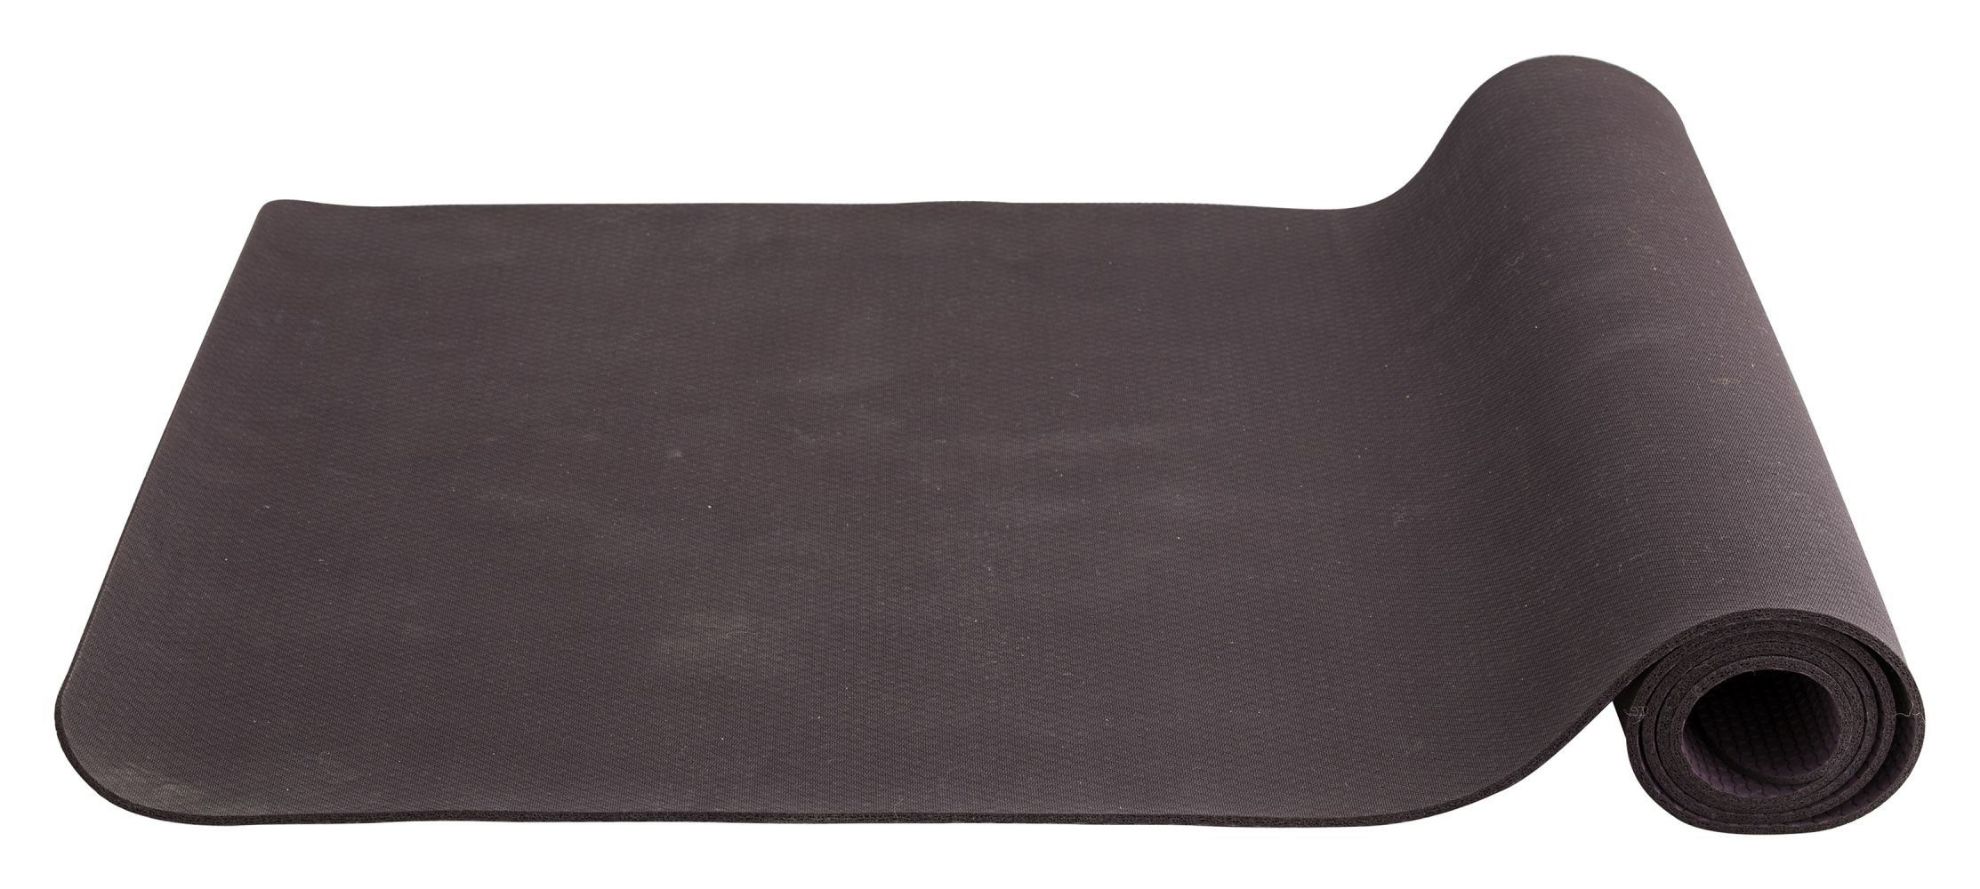 Billede af Nordal Yoga mat L: 173 cm - Burgundy